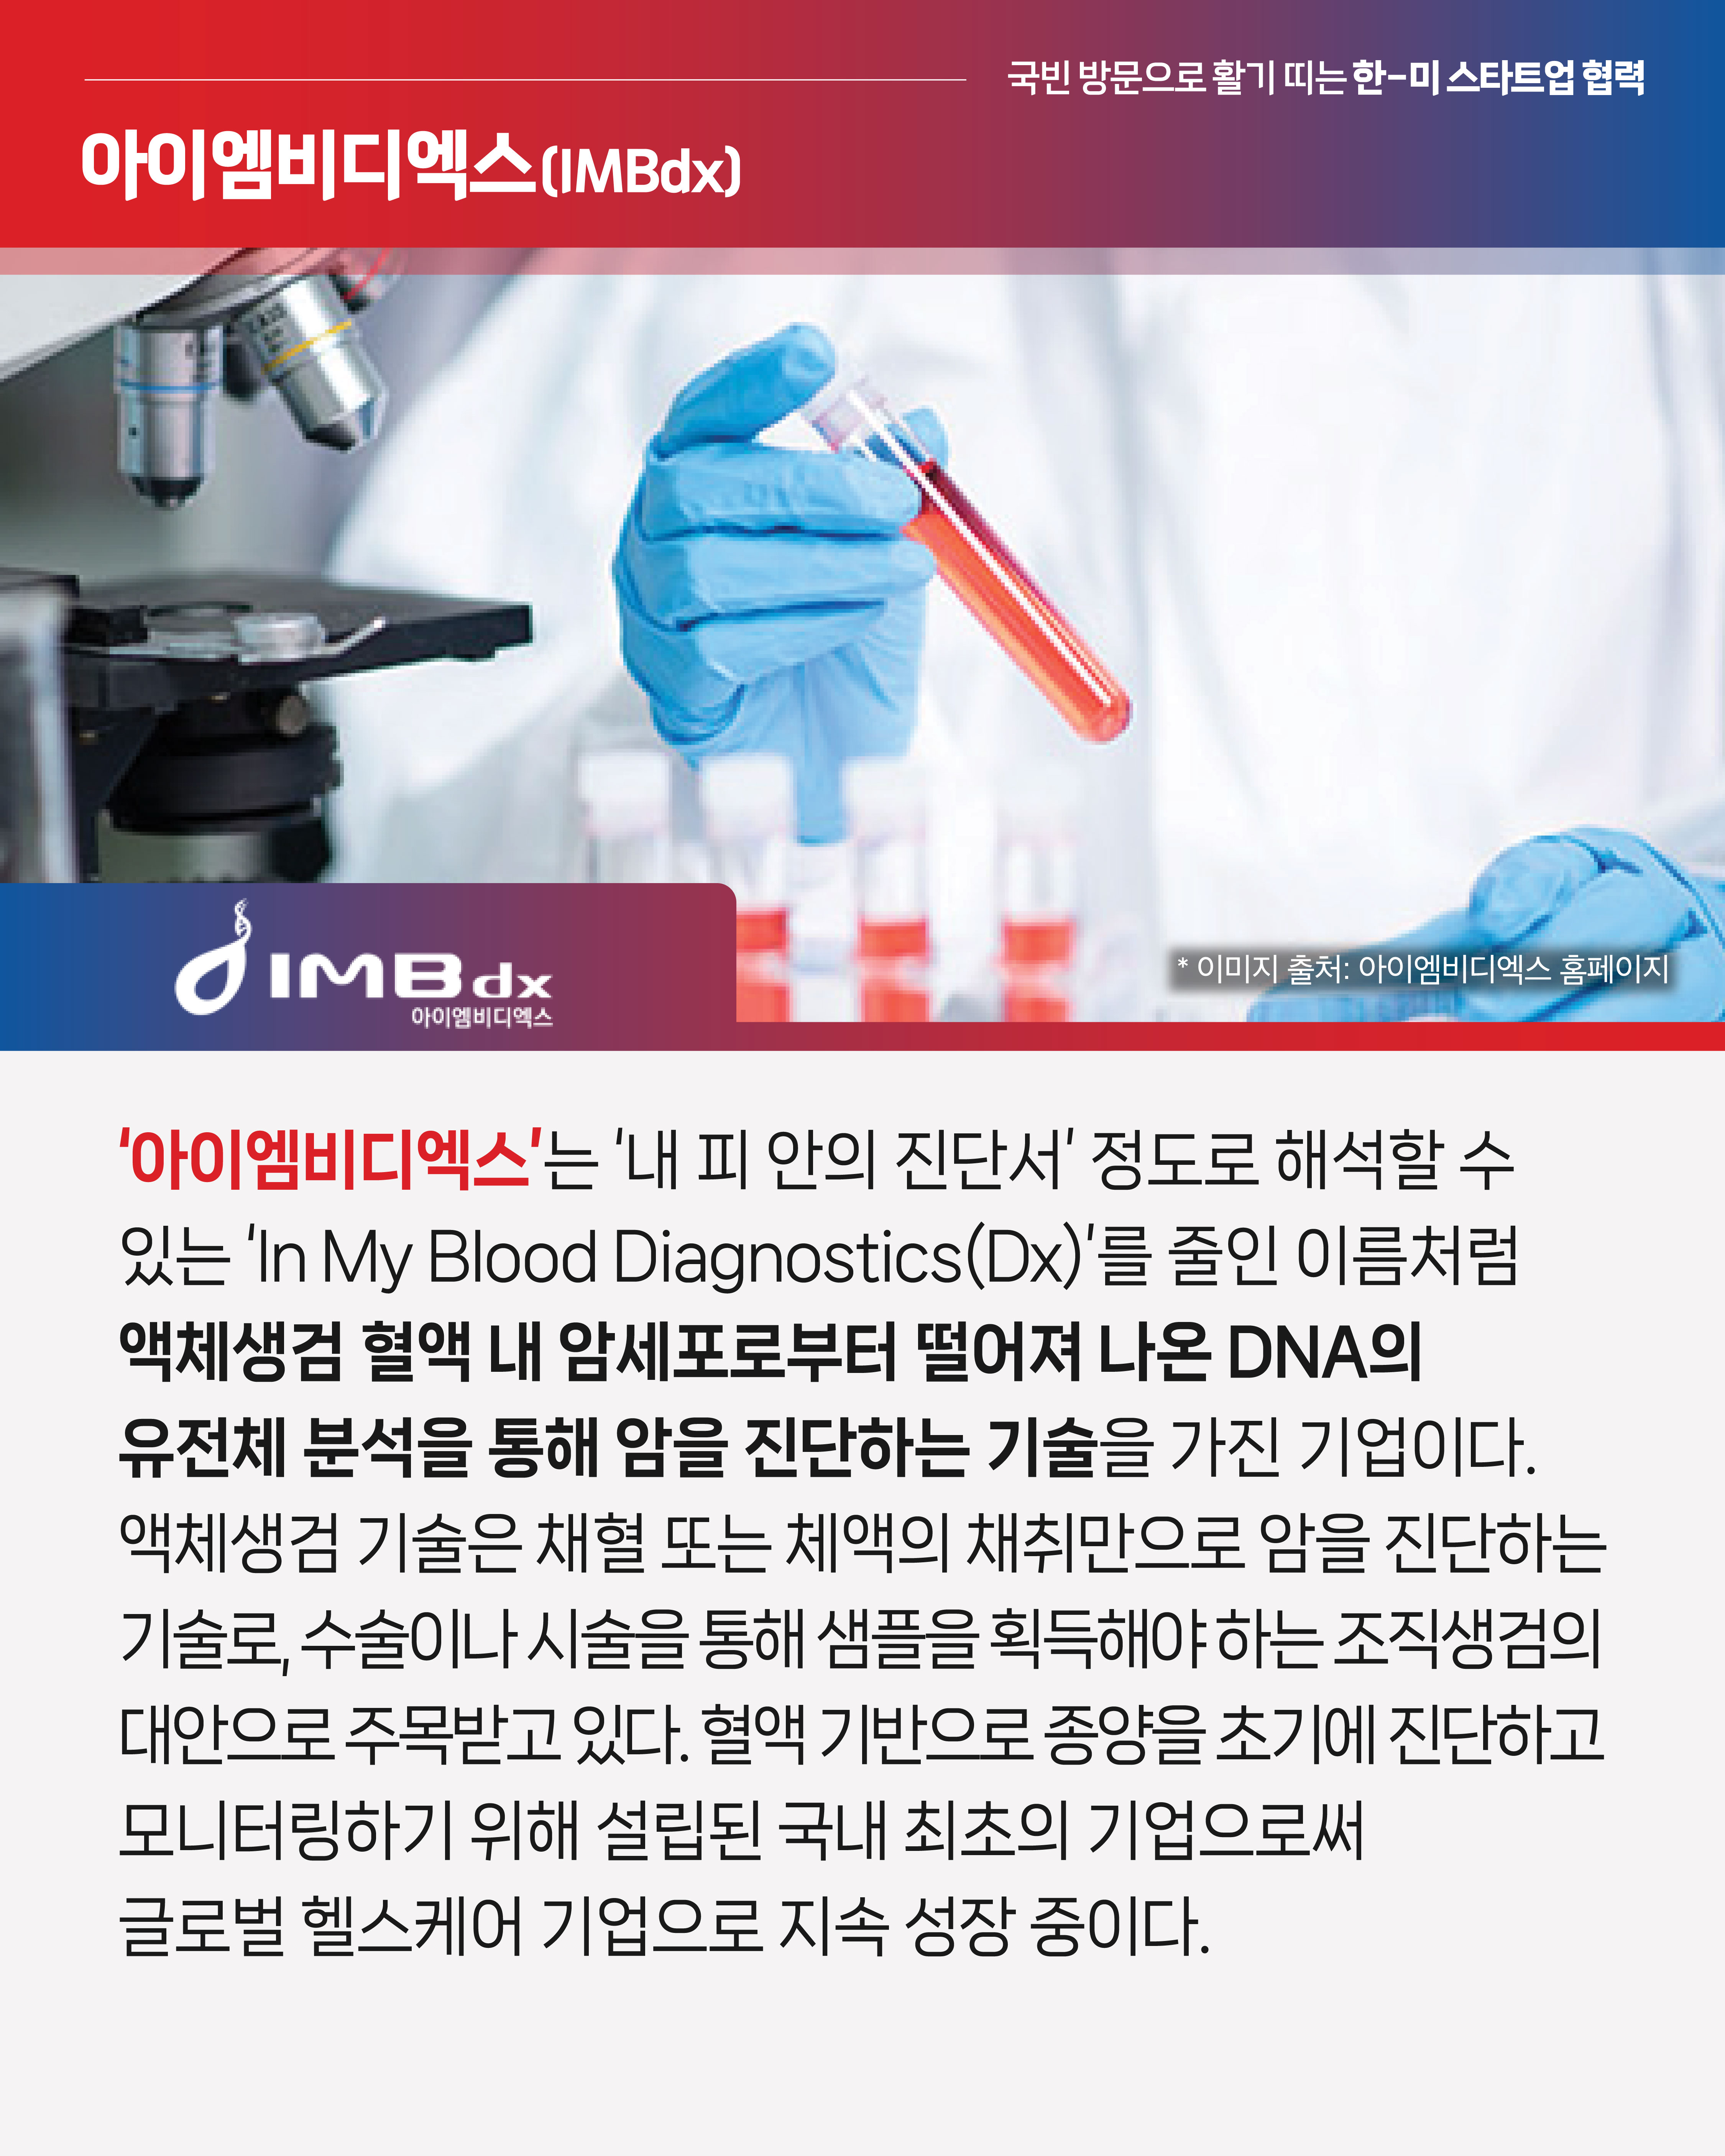 <아이엠비디엑스>
‘아이엠비디엑스’는 ‘내 피 안의 진단서’ 정도로 해석할 수 있는 ‘In My Blood Diagnostics(Dx)’를 줄인 이름처럼 액체생검 혈액 내 암세포로부터 떨어져 나온 DNA의 유전체 분석을 통해 암을 진단하는 기술을 가진 기업이다. 액체생검 기술은 채혈 또는 체액의 채취만으로 암을 진단하는 기술로, 수술이나 시술을 통해 샘플을 획득해야 하는 조직생검의 대안으로 주목받고 있다. 혈액 기반으로 종양을 초기에 진단하고 모니터링하기 위해 설립된 국내 최초의 기업으로써 글로벌 헬스케어 기업으로 지속 성장 중이다.
